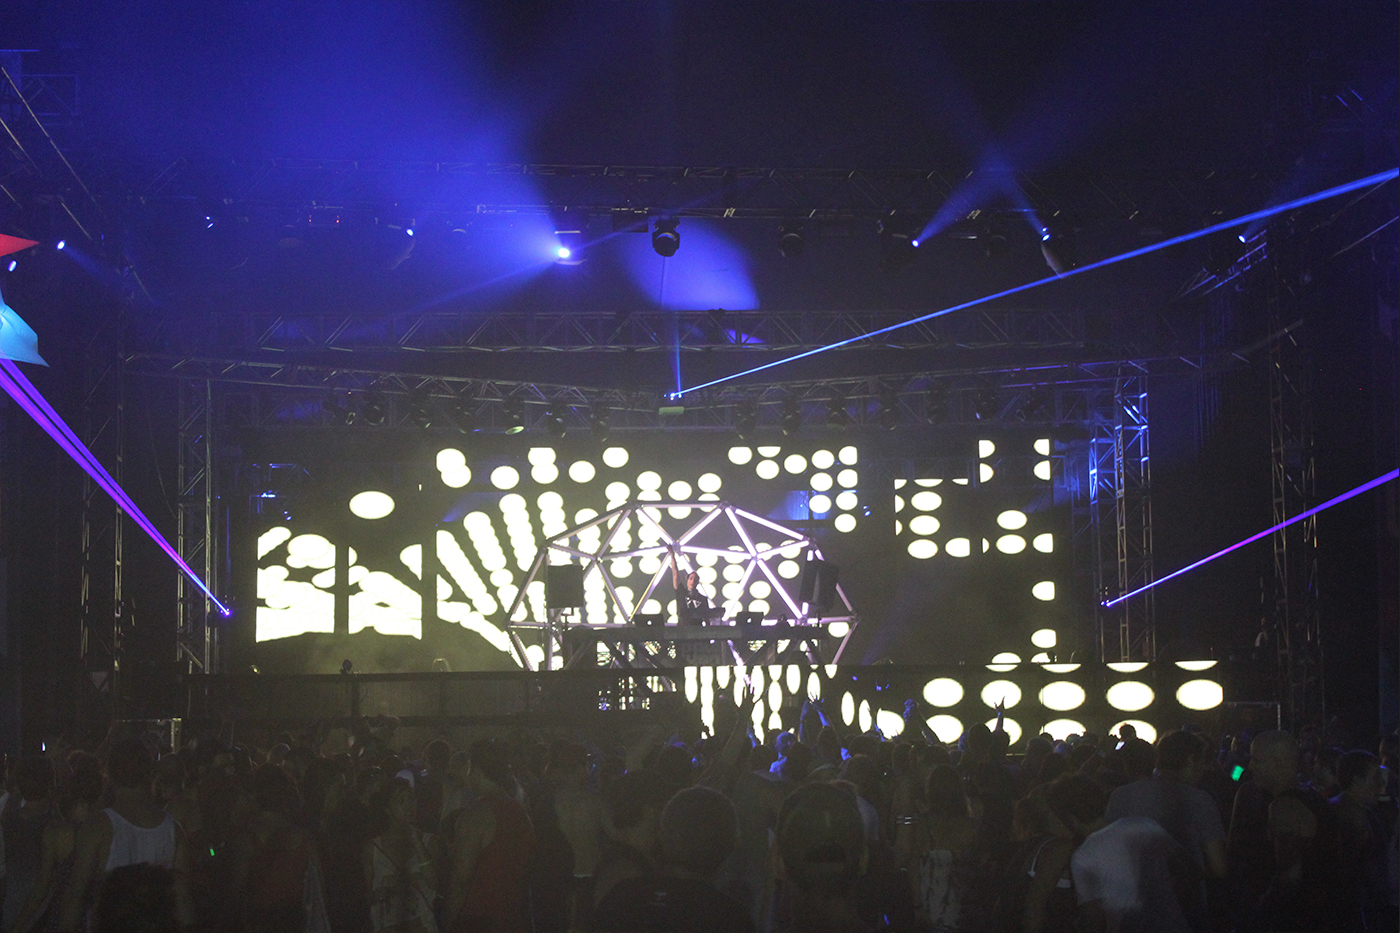 Paul Van Dyk Concert Stage Lighting Design LED Screens Digital Display